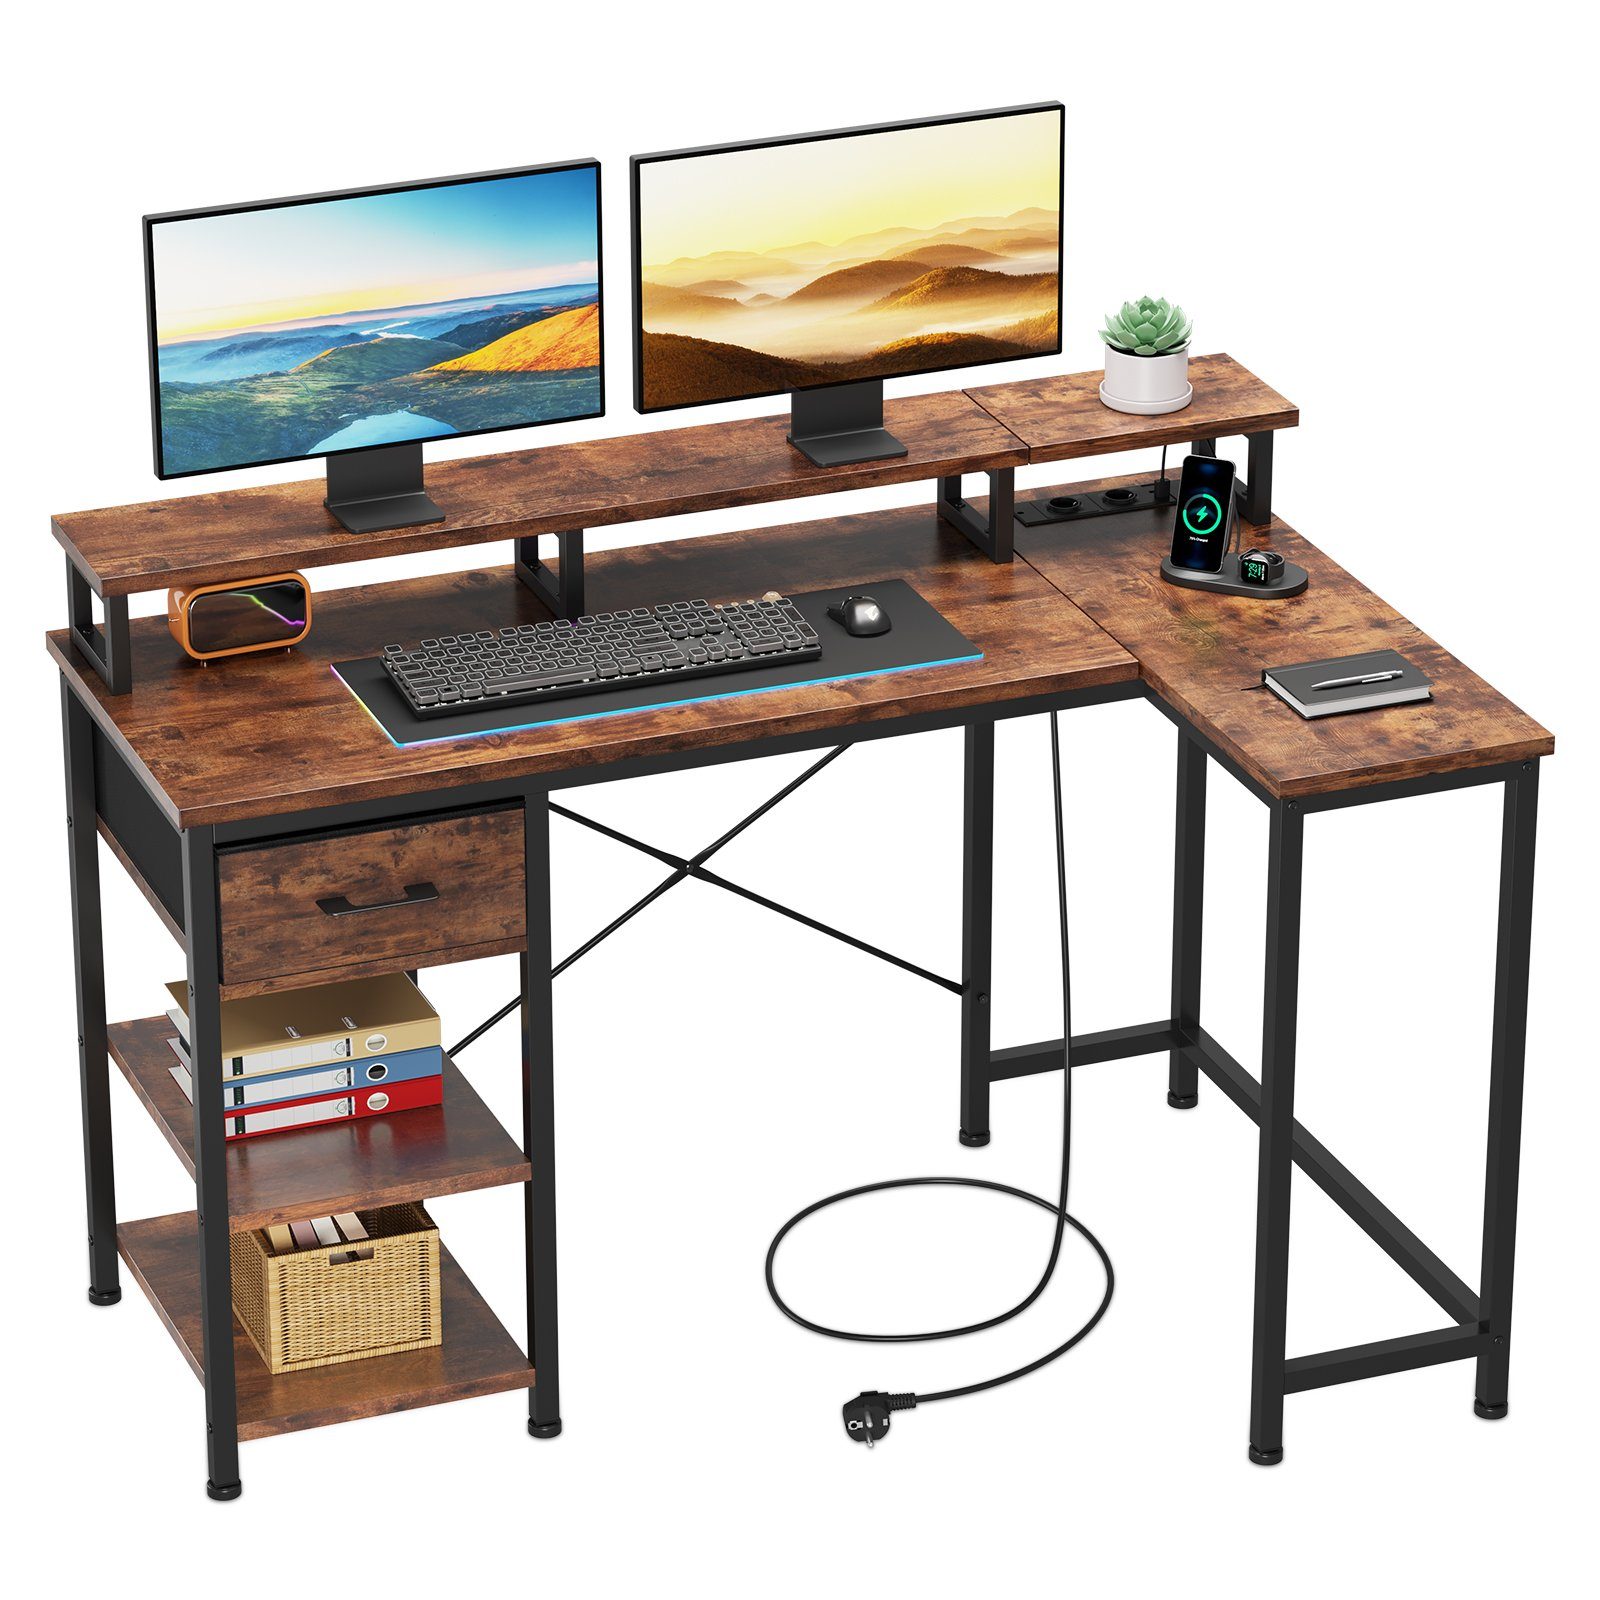 Dripex Eckschreibtisch Schreibtisch L-Form mit Regal Schublade, mit Steckdose und USB Ladeanschlüsse